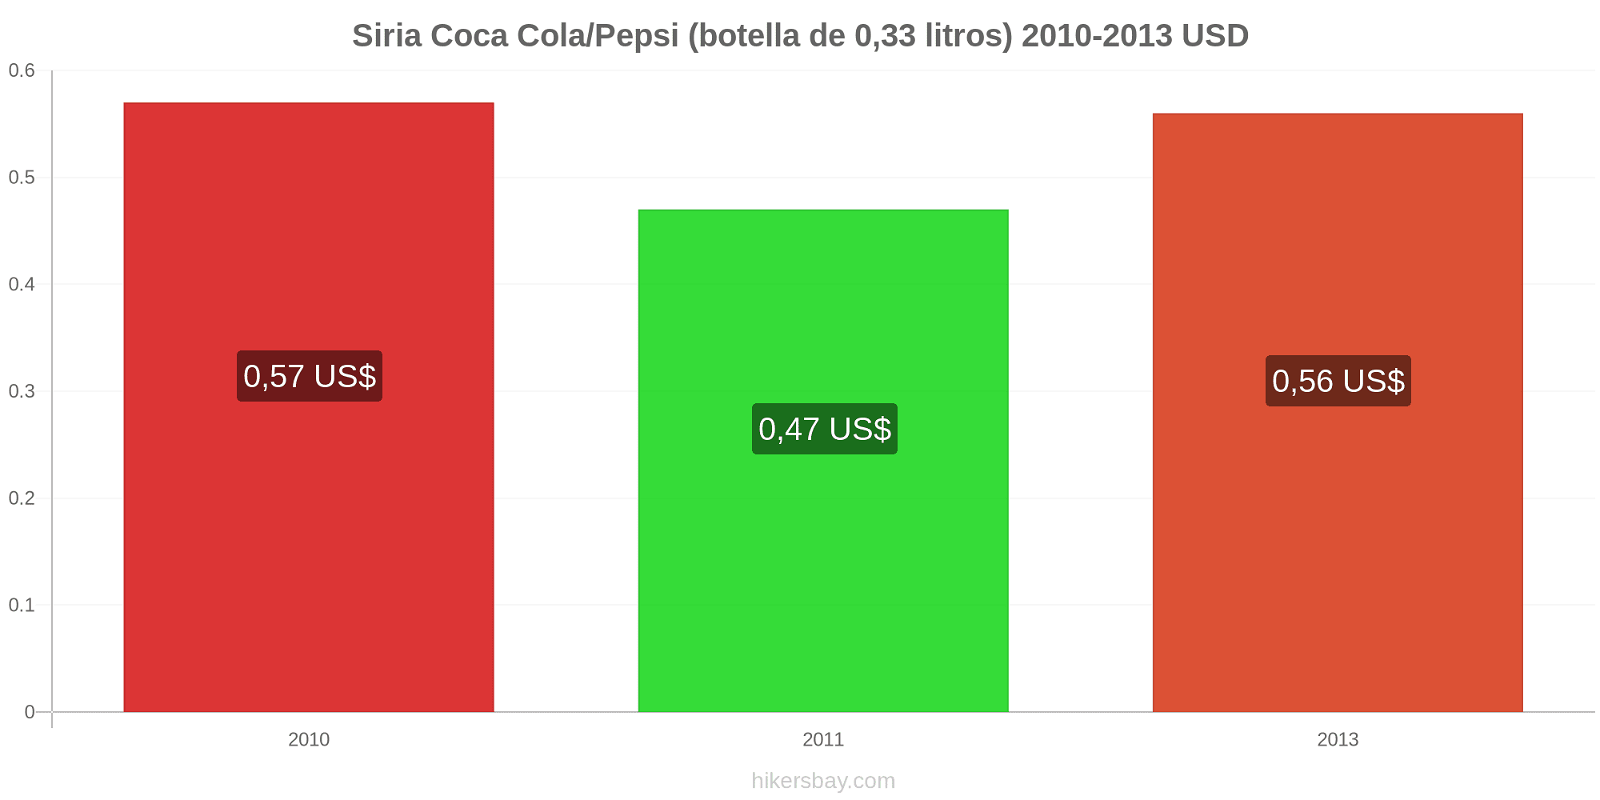 Siria cambios de precios Coca-Cola/Pepsi (botella de 0.33 litros) hikersbay.com